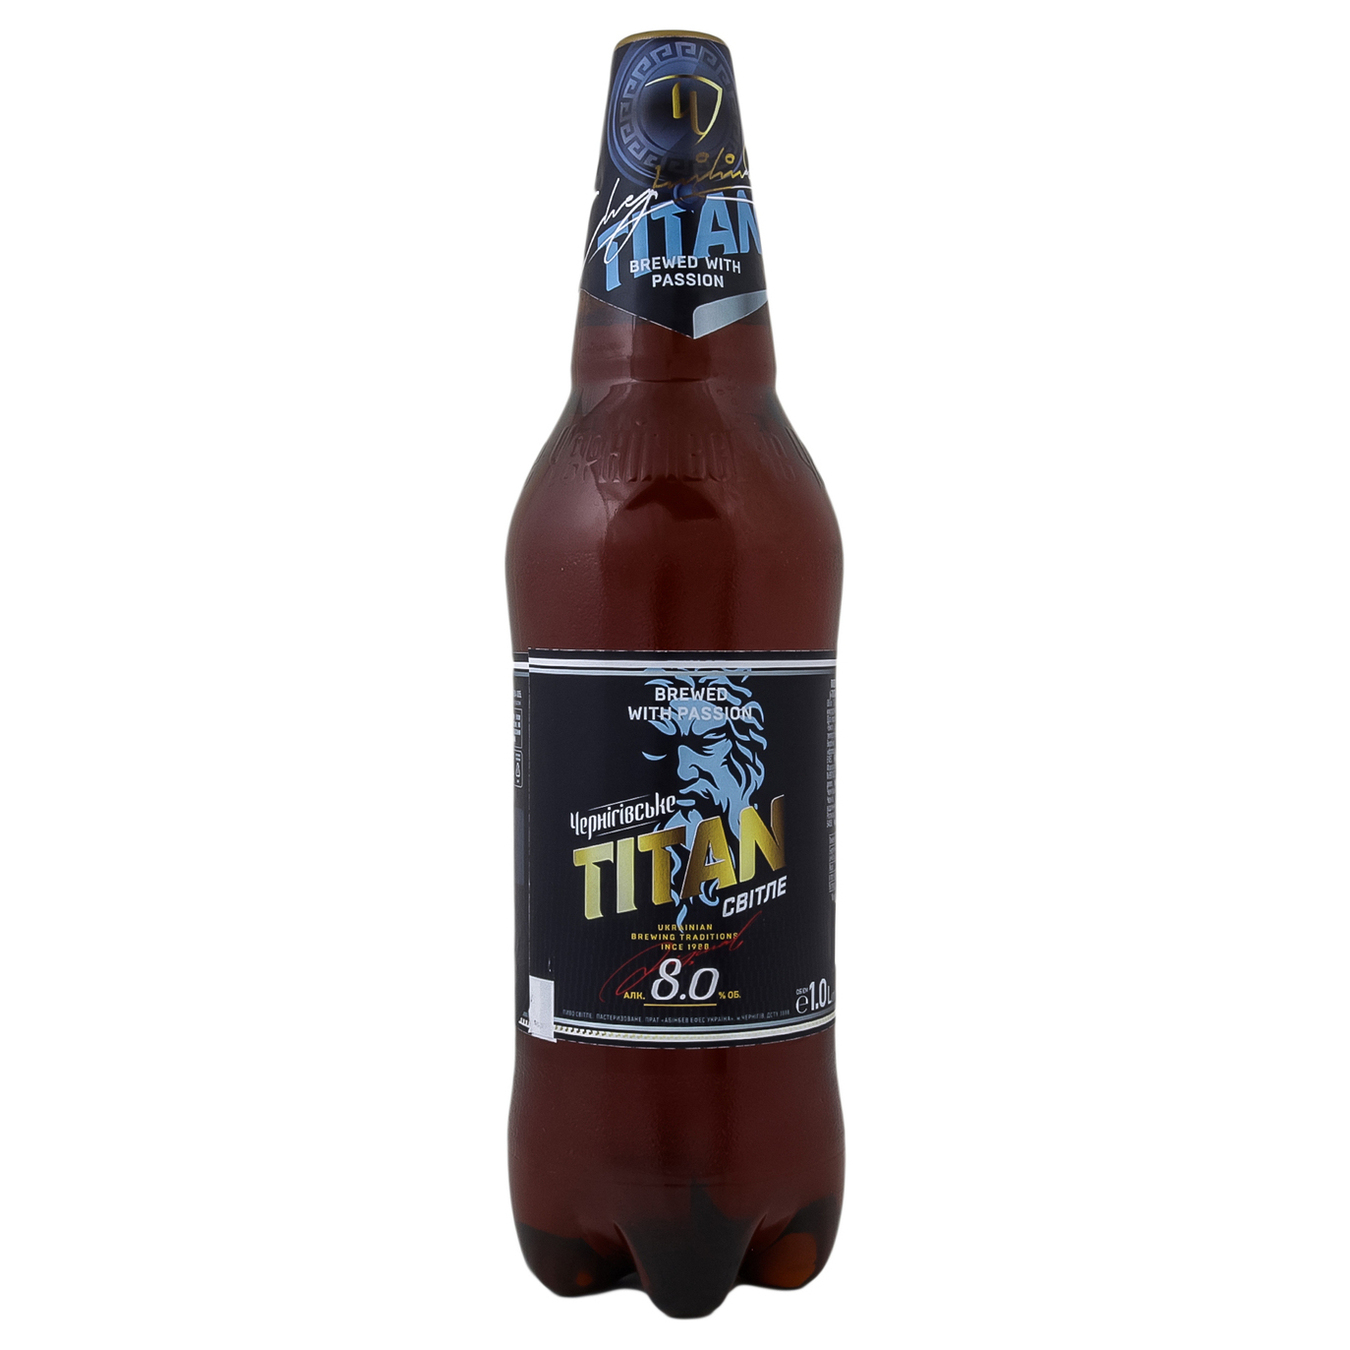 Chernihivske Titan light beer 8% 1l